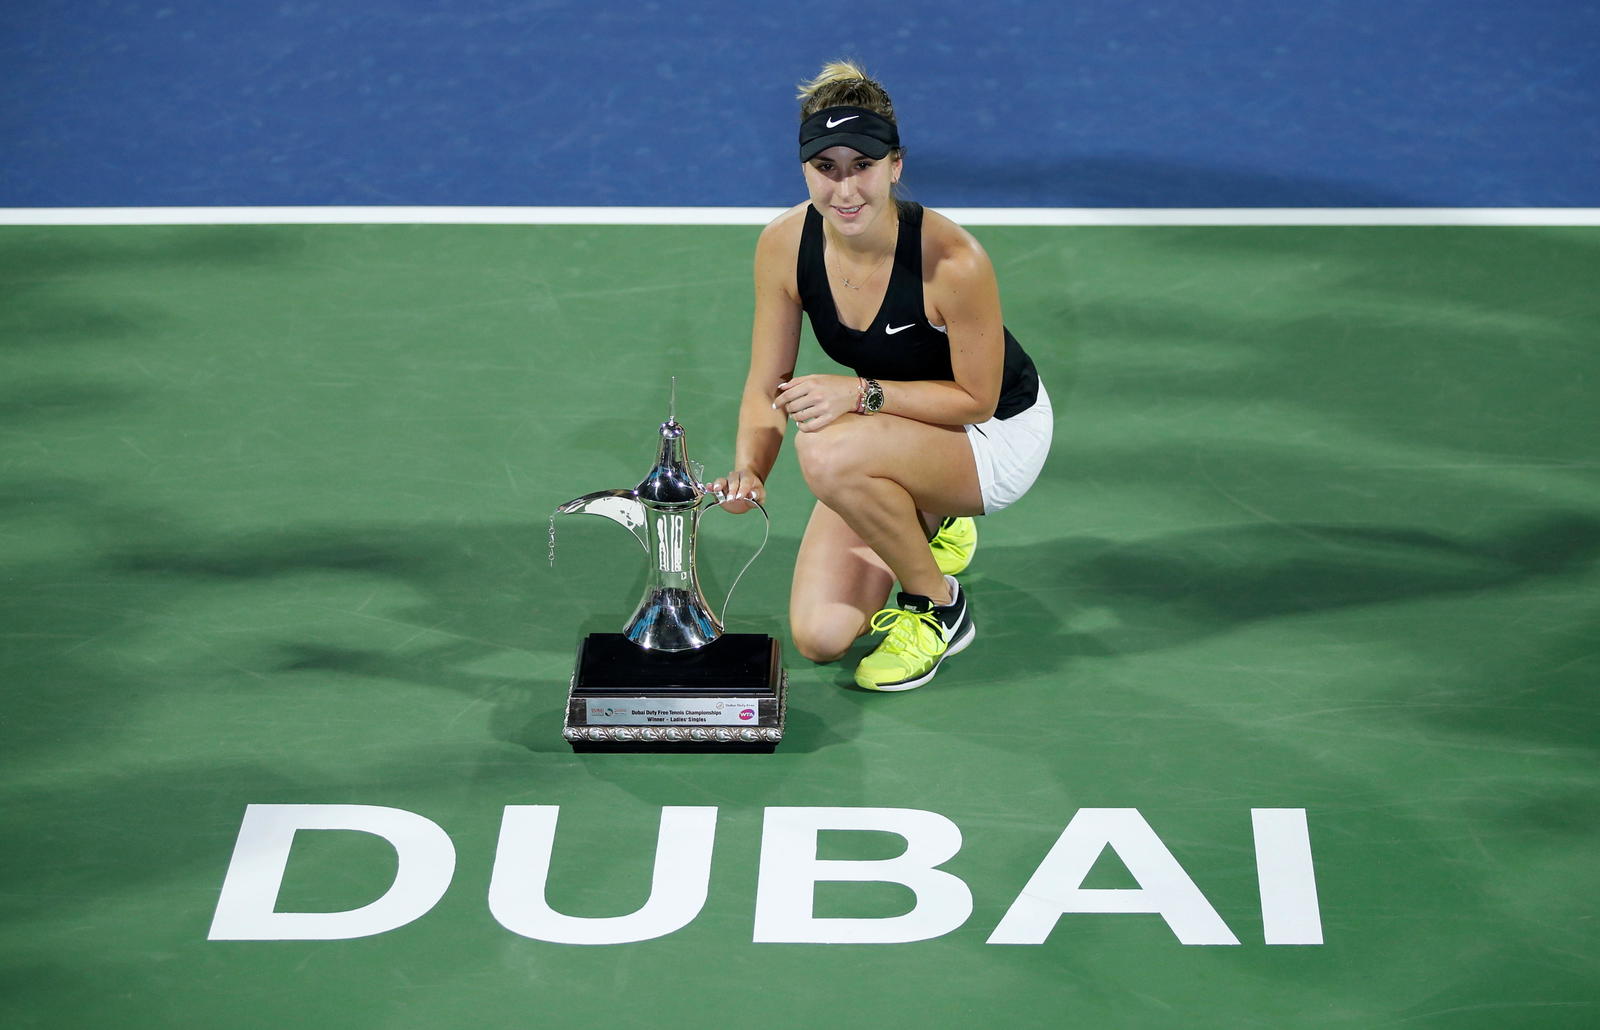 Belinda Bencic se impuso 6-3, 1-6, 6-2 a Petra Kvitova en la final del torneo de Dubái, logrando su primer título desde 2015.